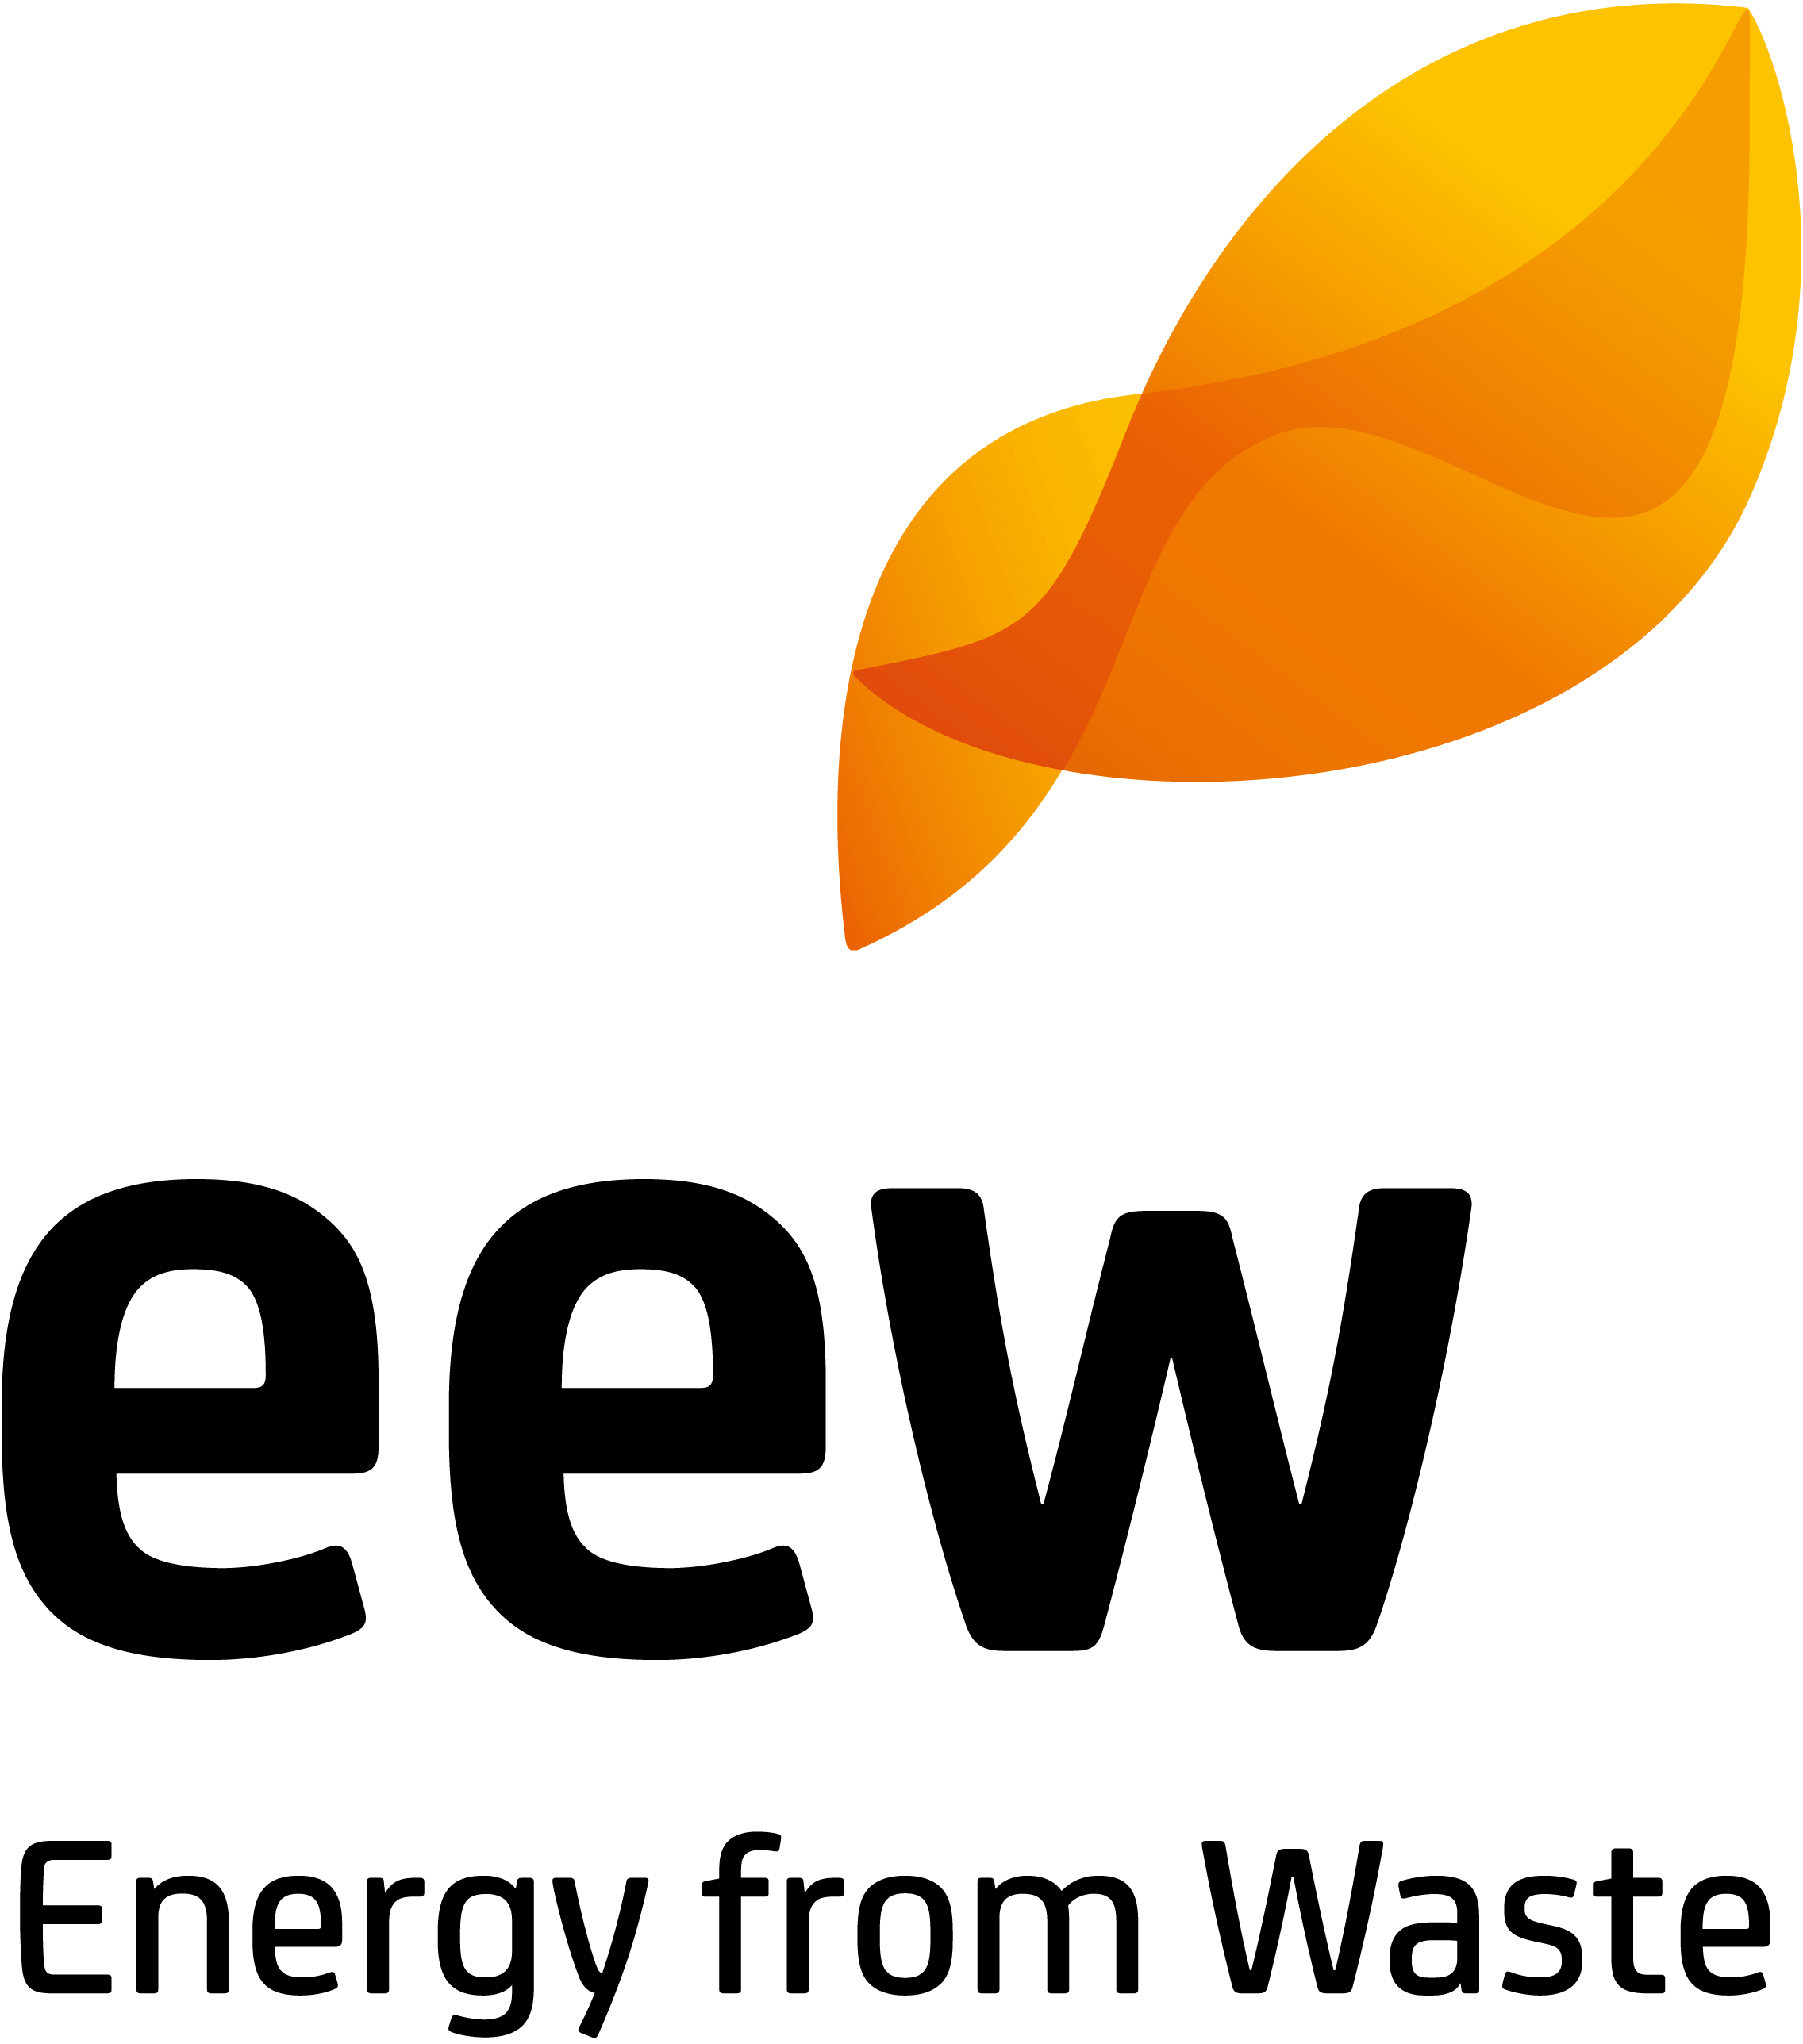 eew's provider logo